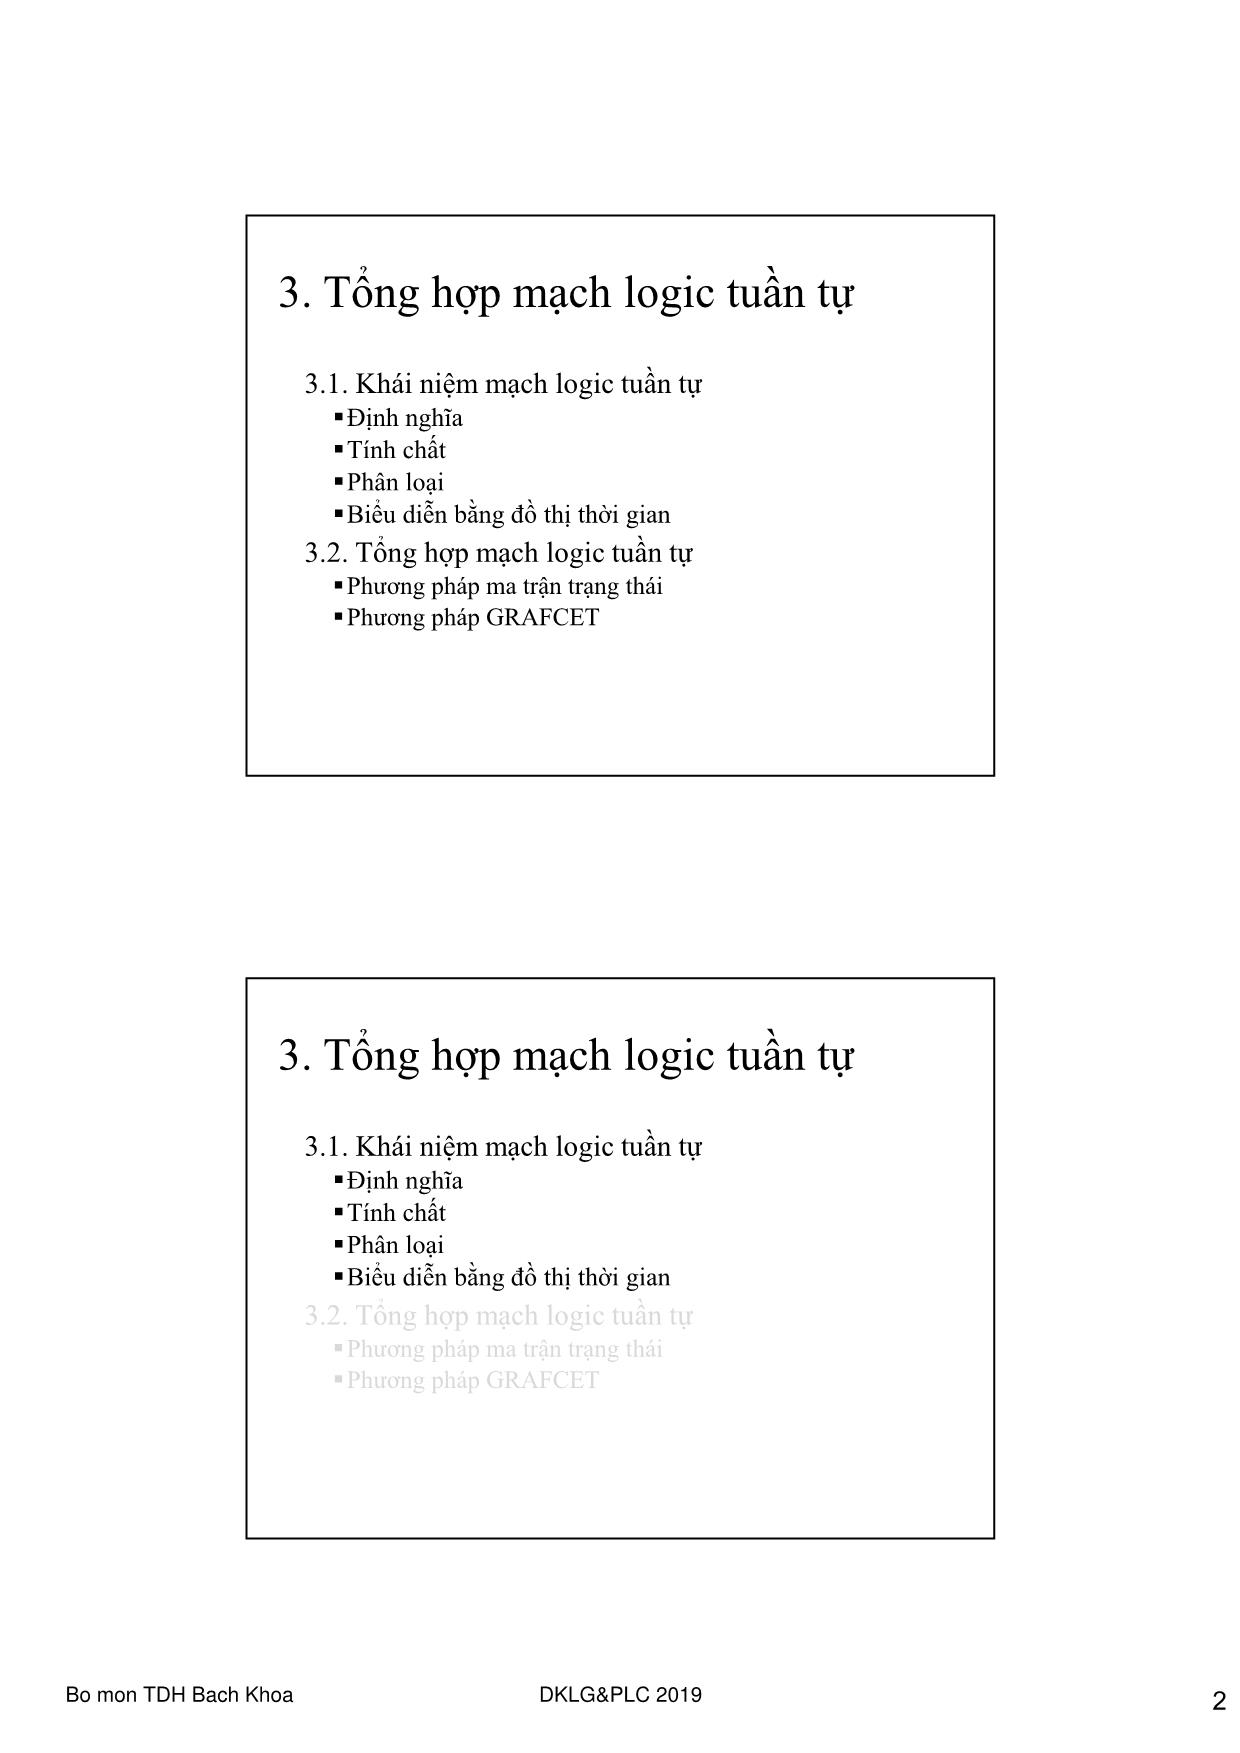 Bài giảng Điều khiển Logic và PLC - Chương 3: Tổng hợp mạch logic tuần tự trang 2